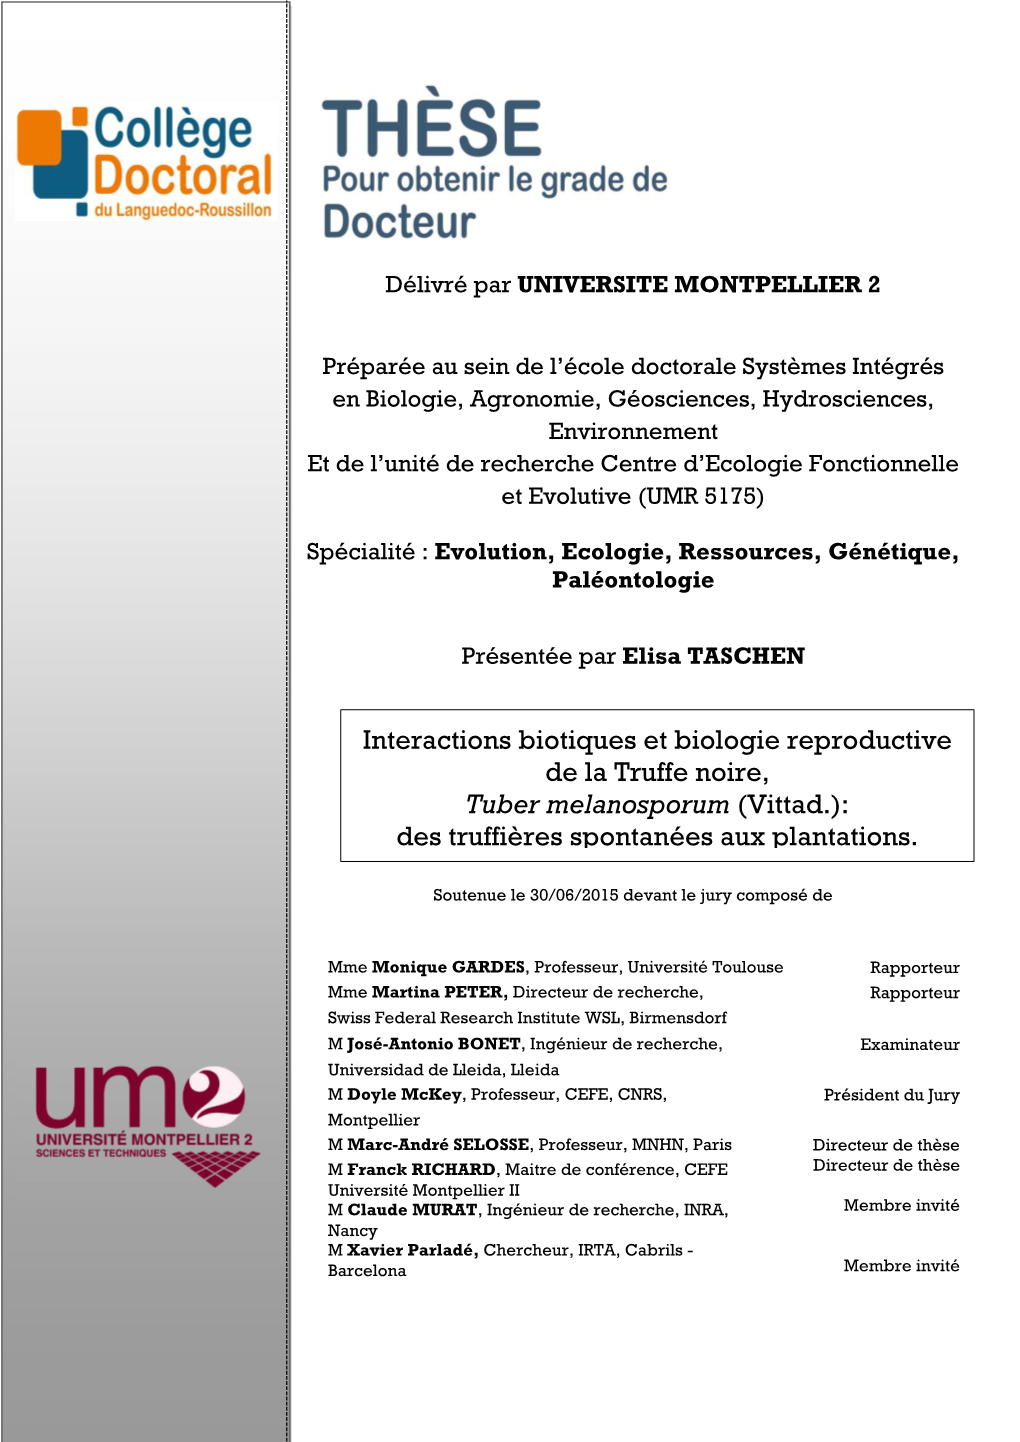 Interactions Biotiques Et Biologie Reproductive De La Truffe Noire, Tuber Melanosporum (Vittad.)